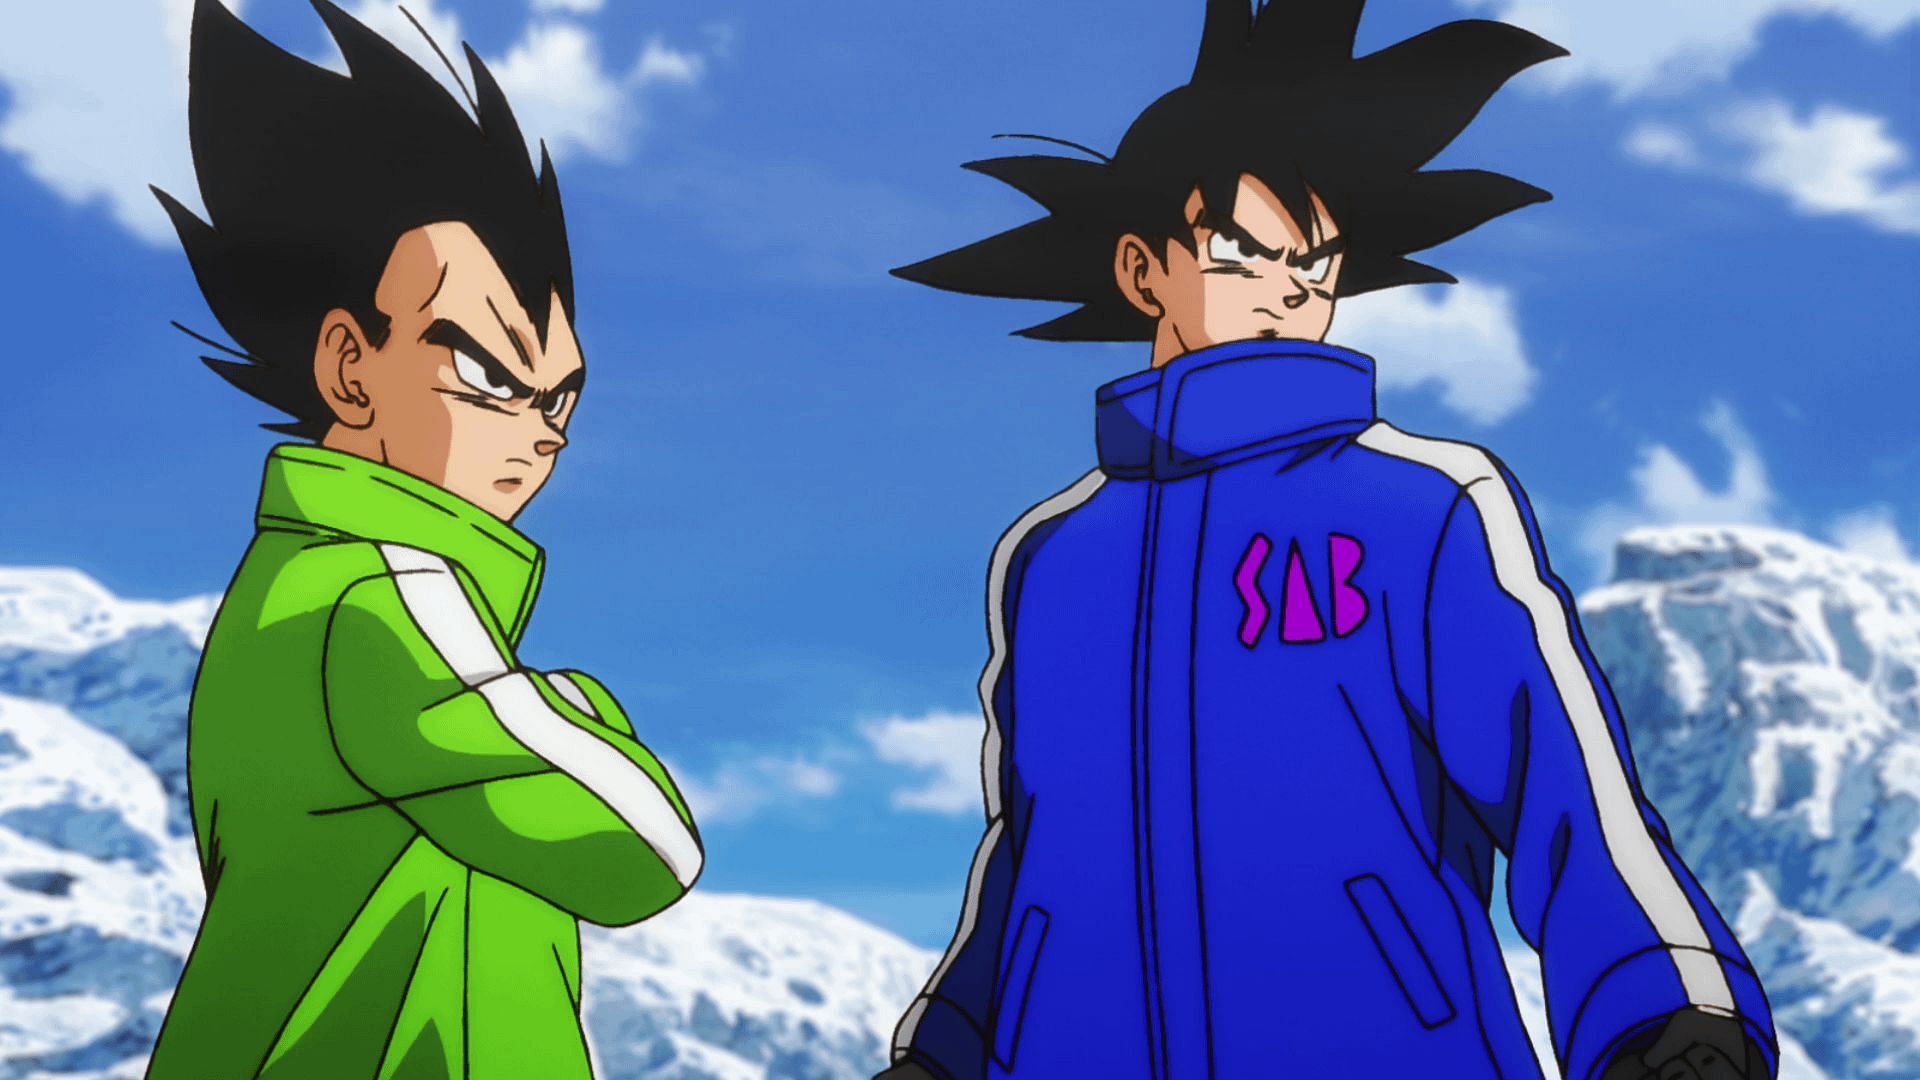 Dragon Ball manga confirms a character stronger than Goku &amp; Vegeta (Image via Toei Animation)